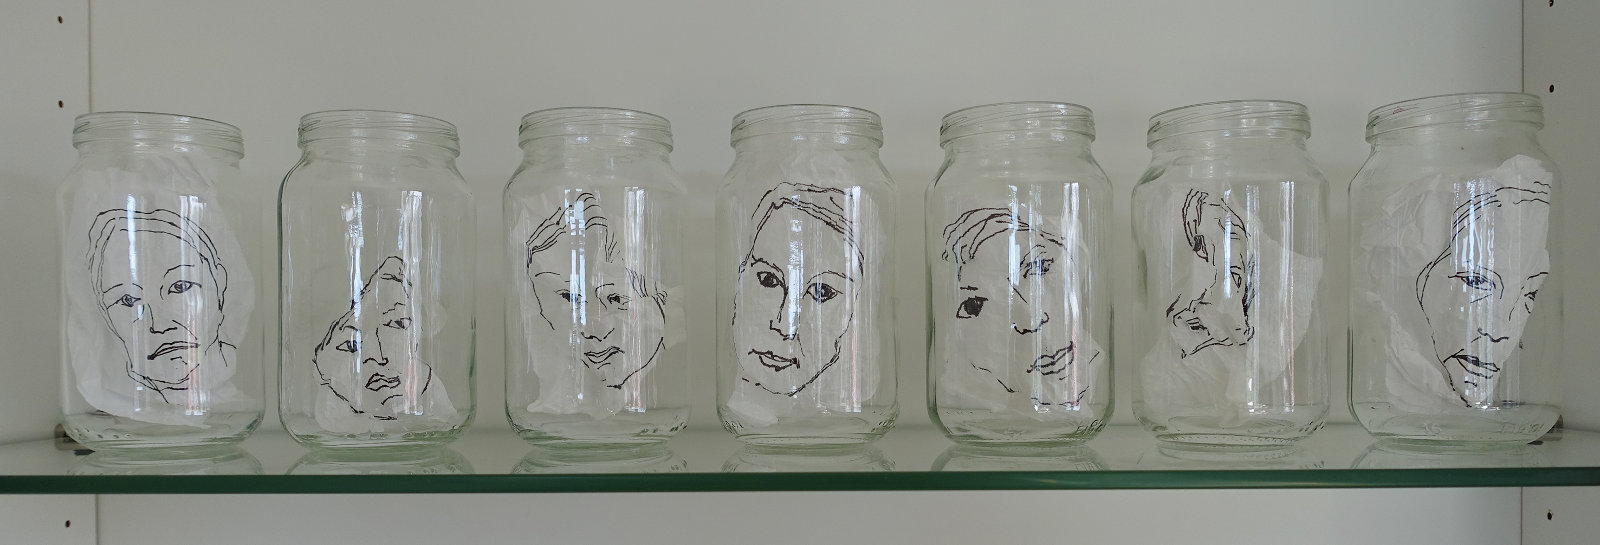 Väsymyksen kasvot, 2016, rypistellyt piirustukset lasipurkeissa, 12 x 48 x 6 cm 